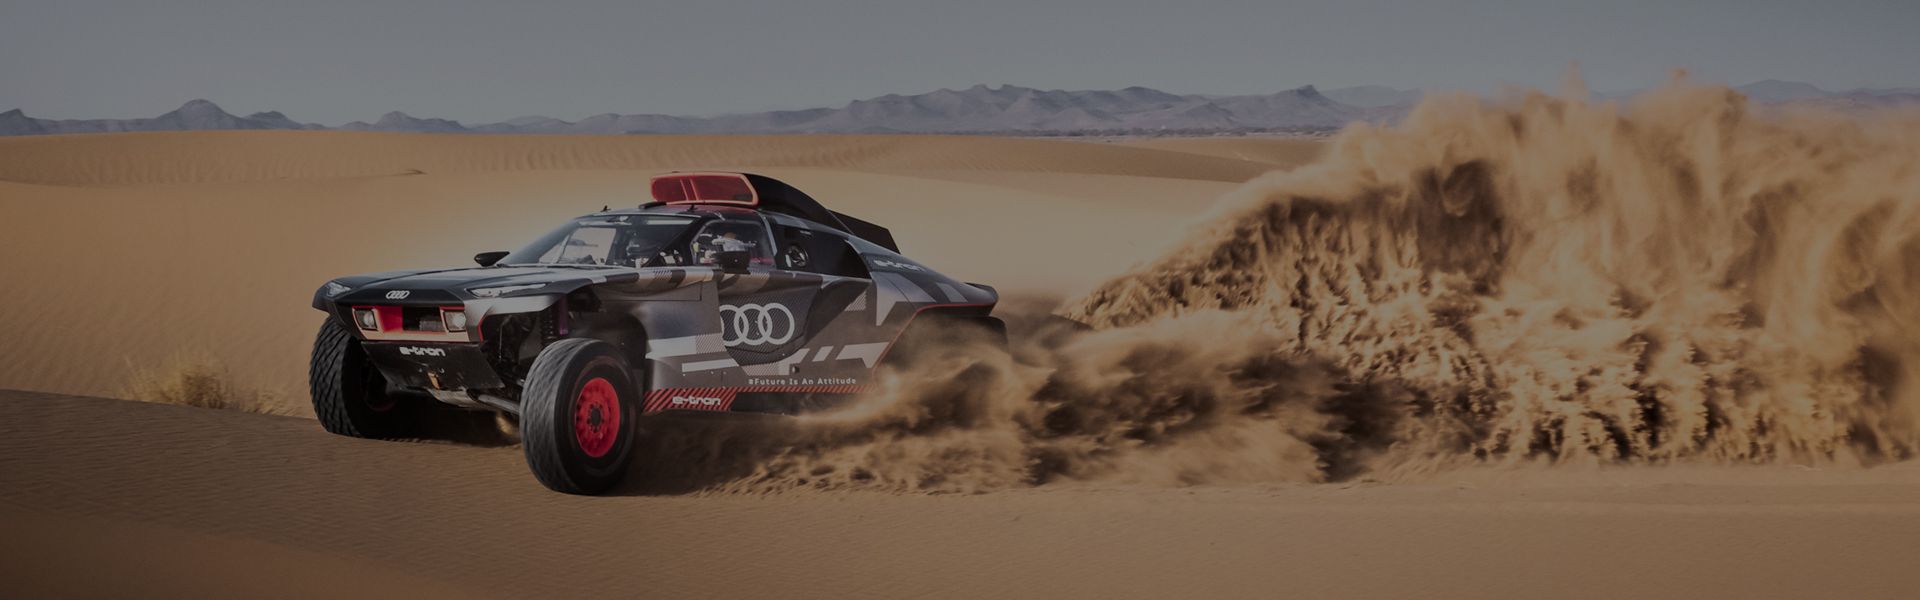 L'Audi RS Q e-tron traverse un paysage désertique.